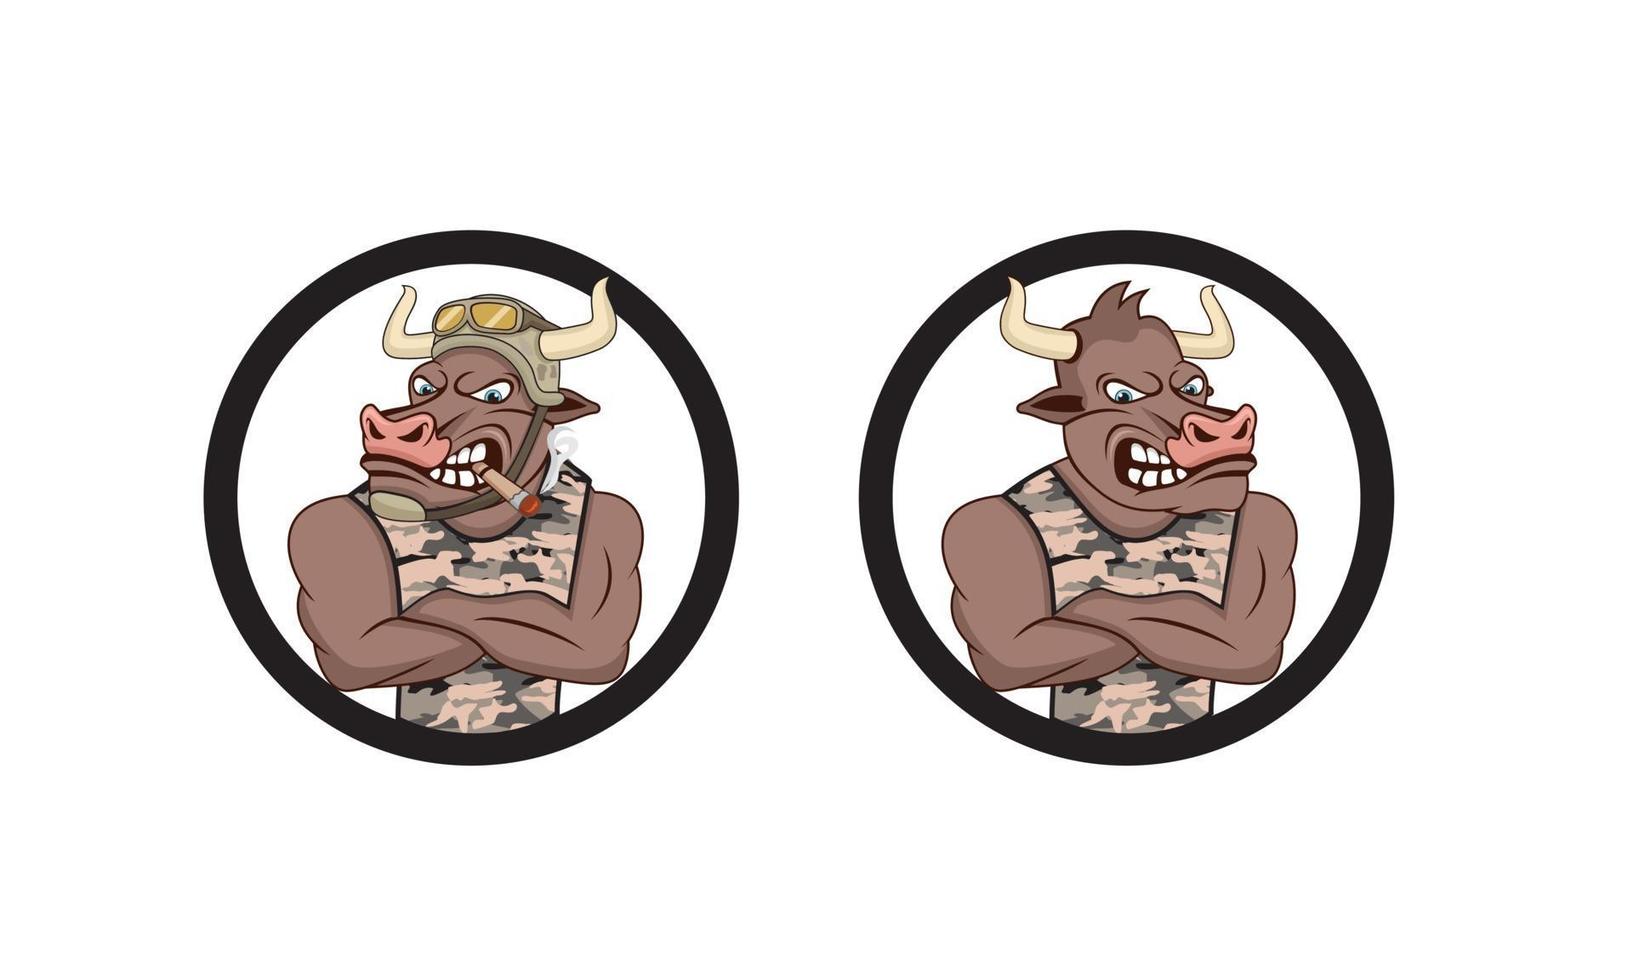 Bull Army cartoon character design illustration vecteur eps format, adapté à vos besoins de conception, logo, illustration, animation, etc.